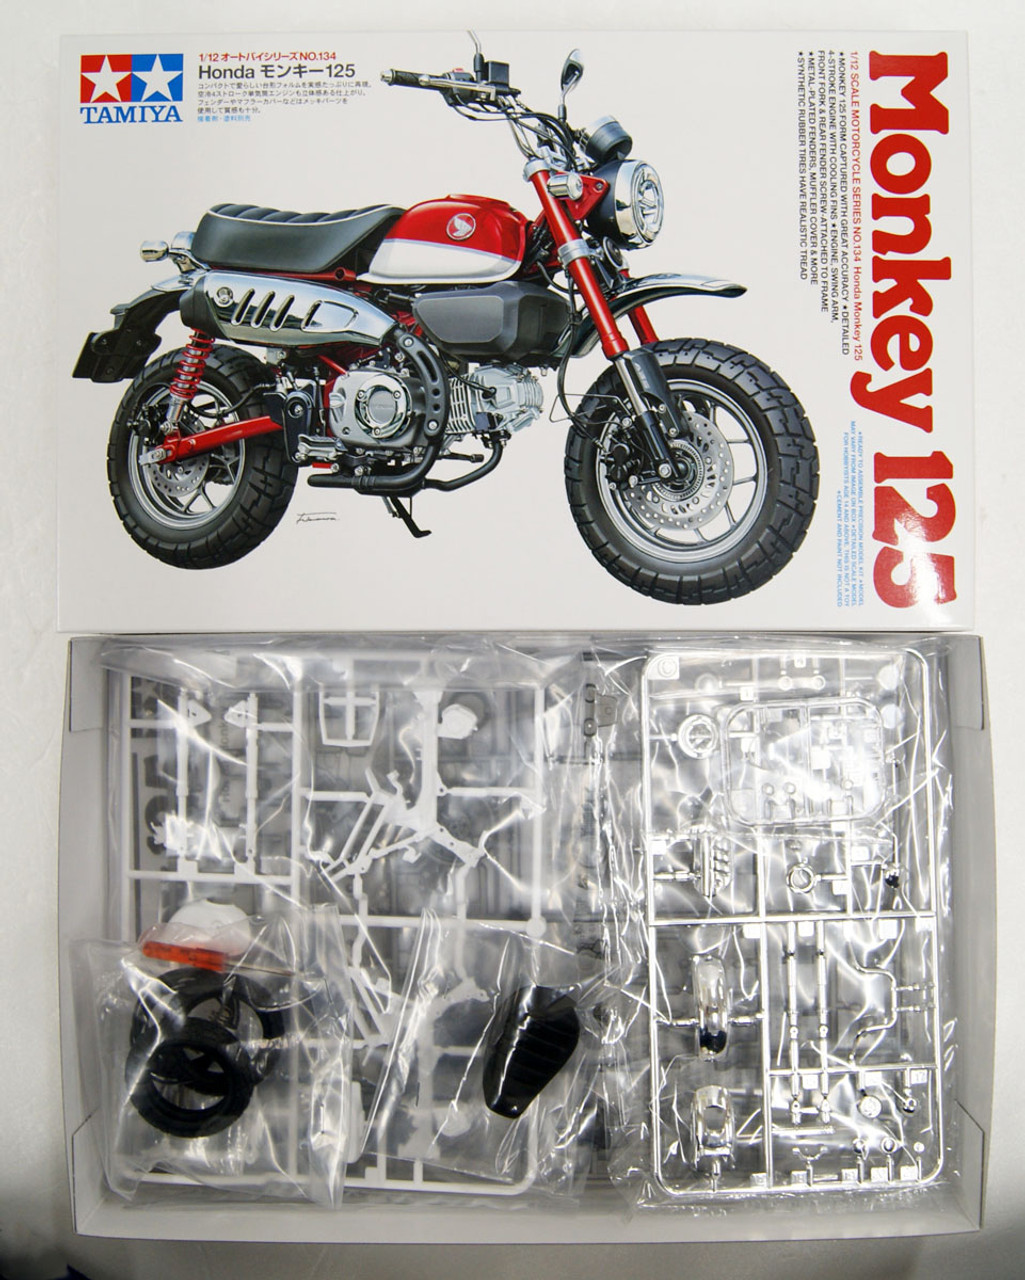 Tamiya 14134 Honda Monkey 125 1/12 Scale Kit